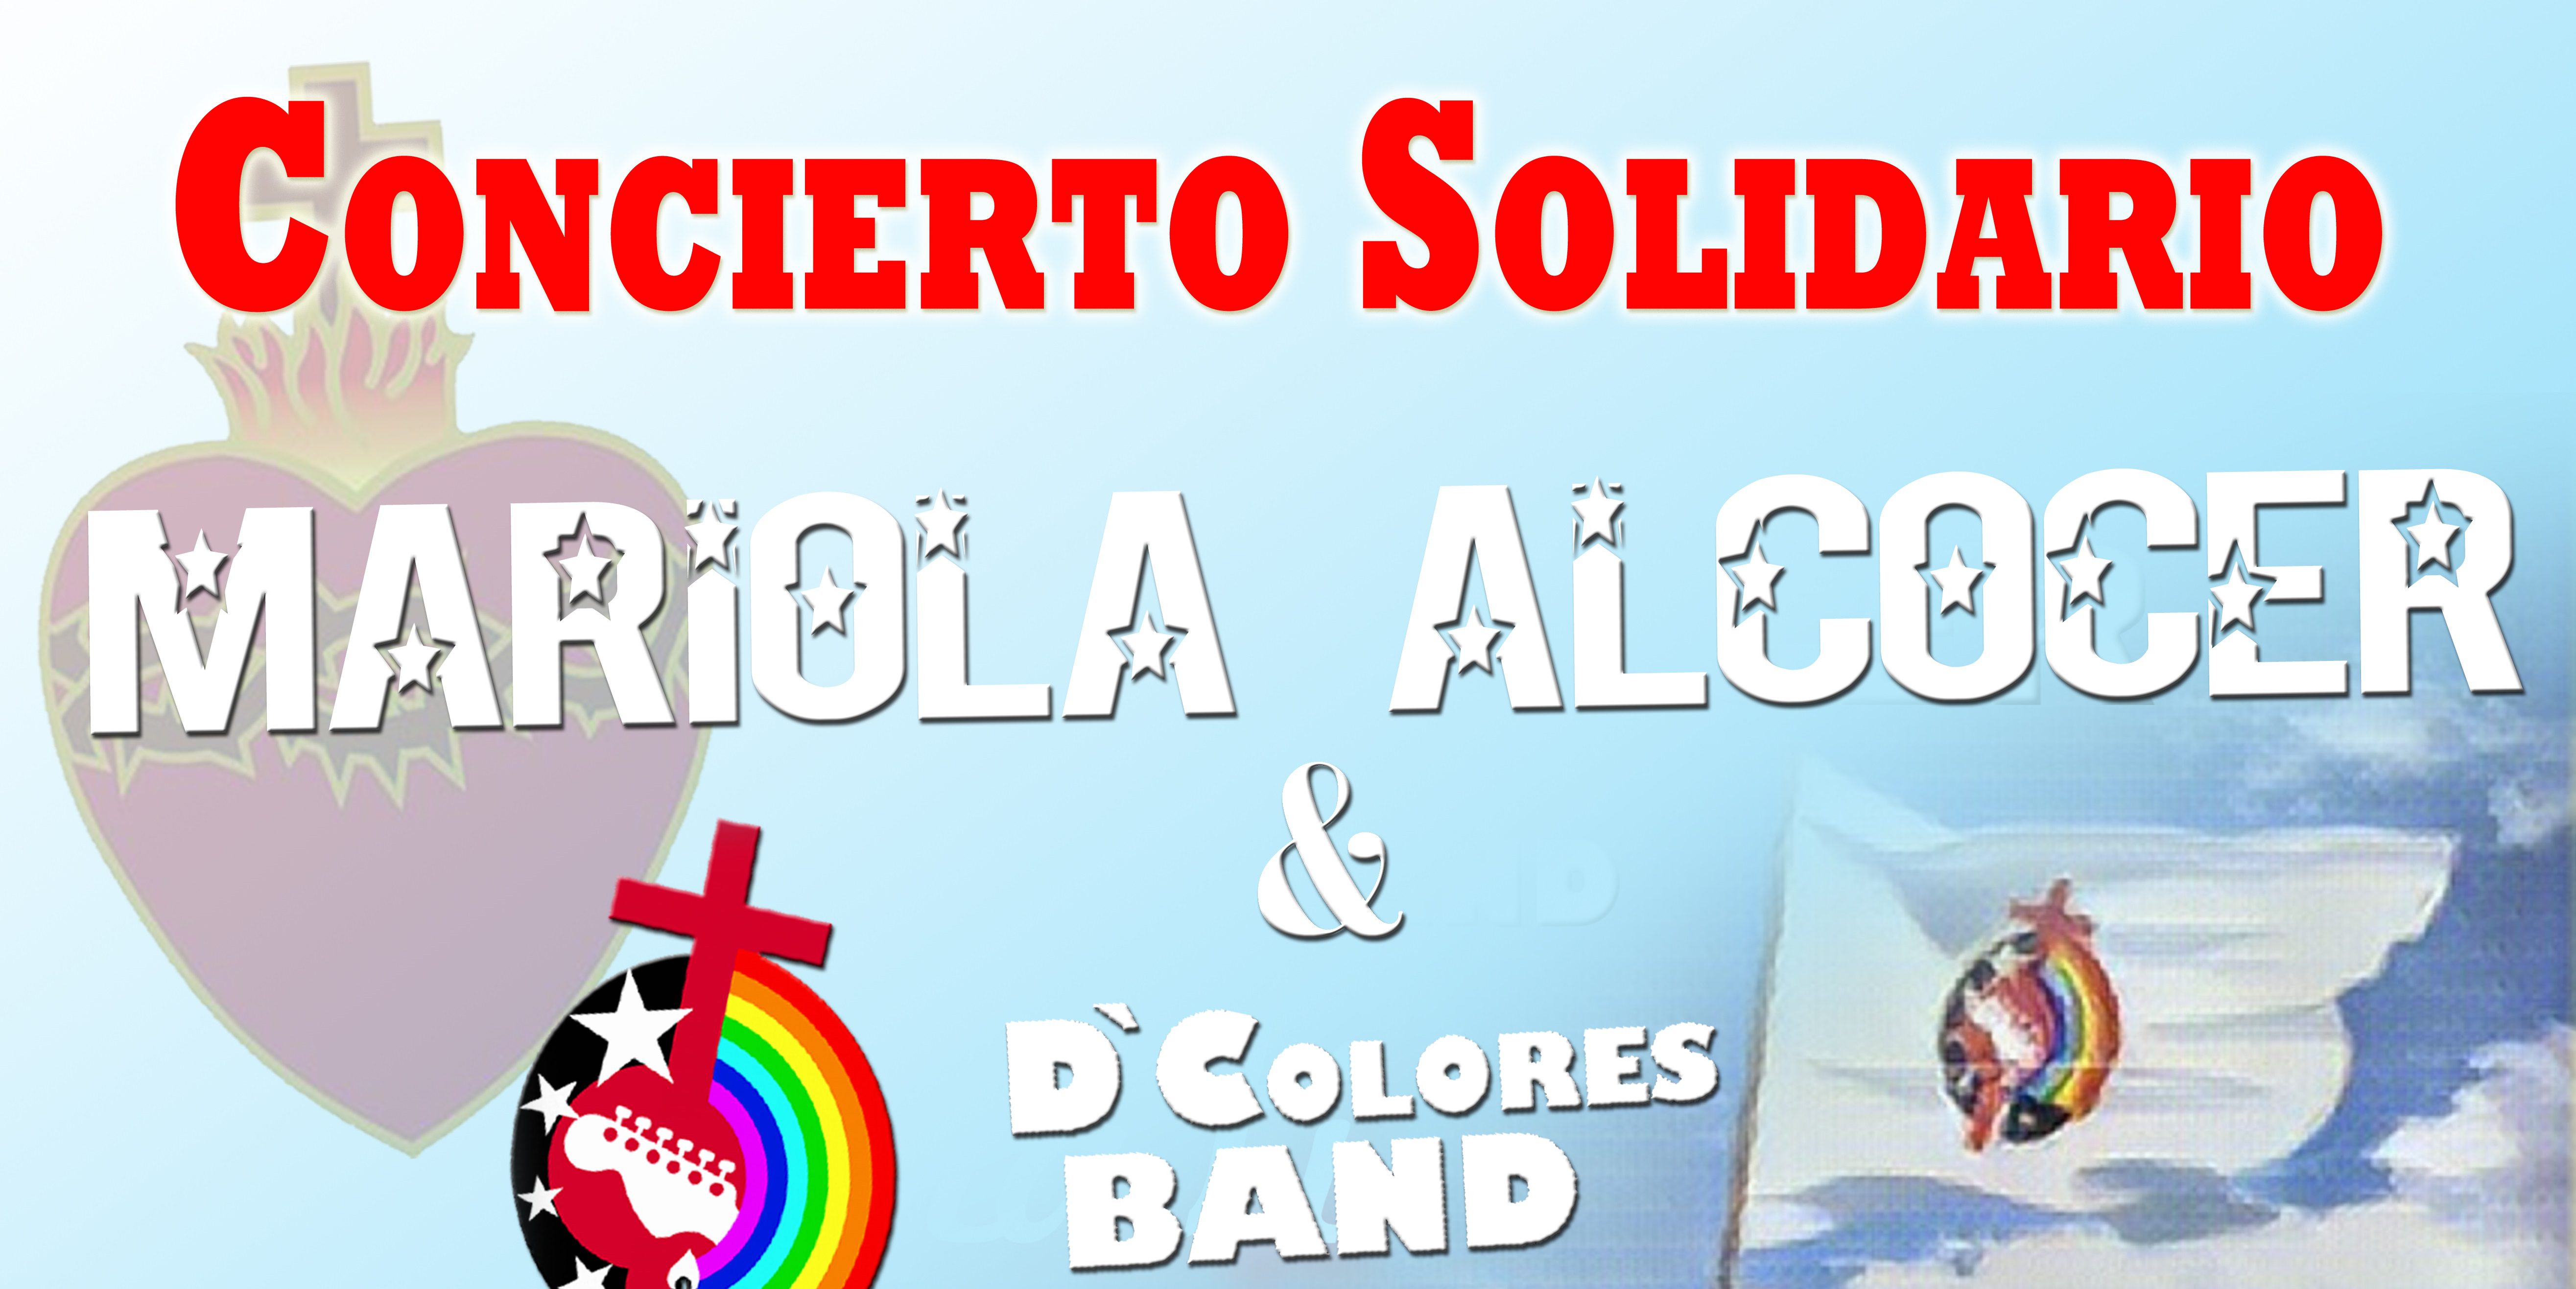 La Casa Misionera San José acogerá este sábado un concierto solidario a cargo de Mariola Alcocer y D`Colores